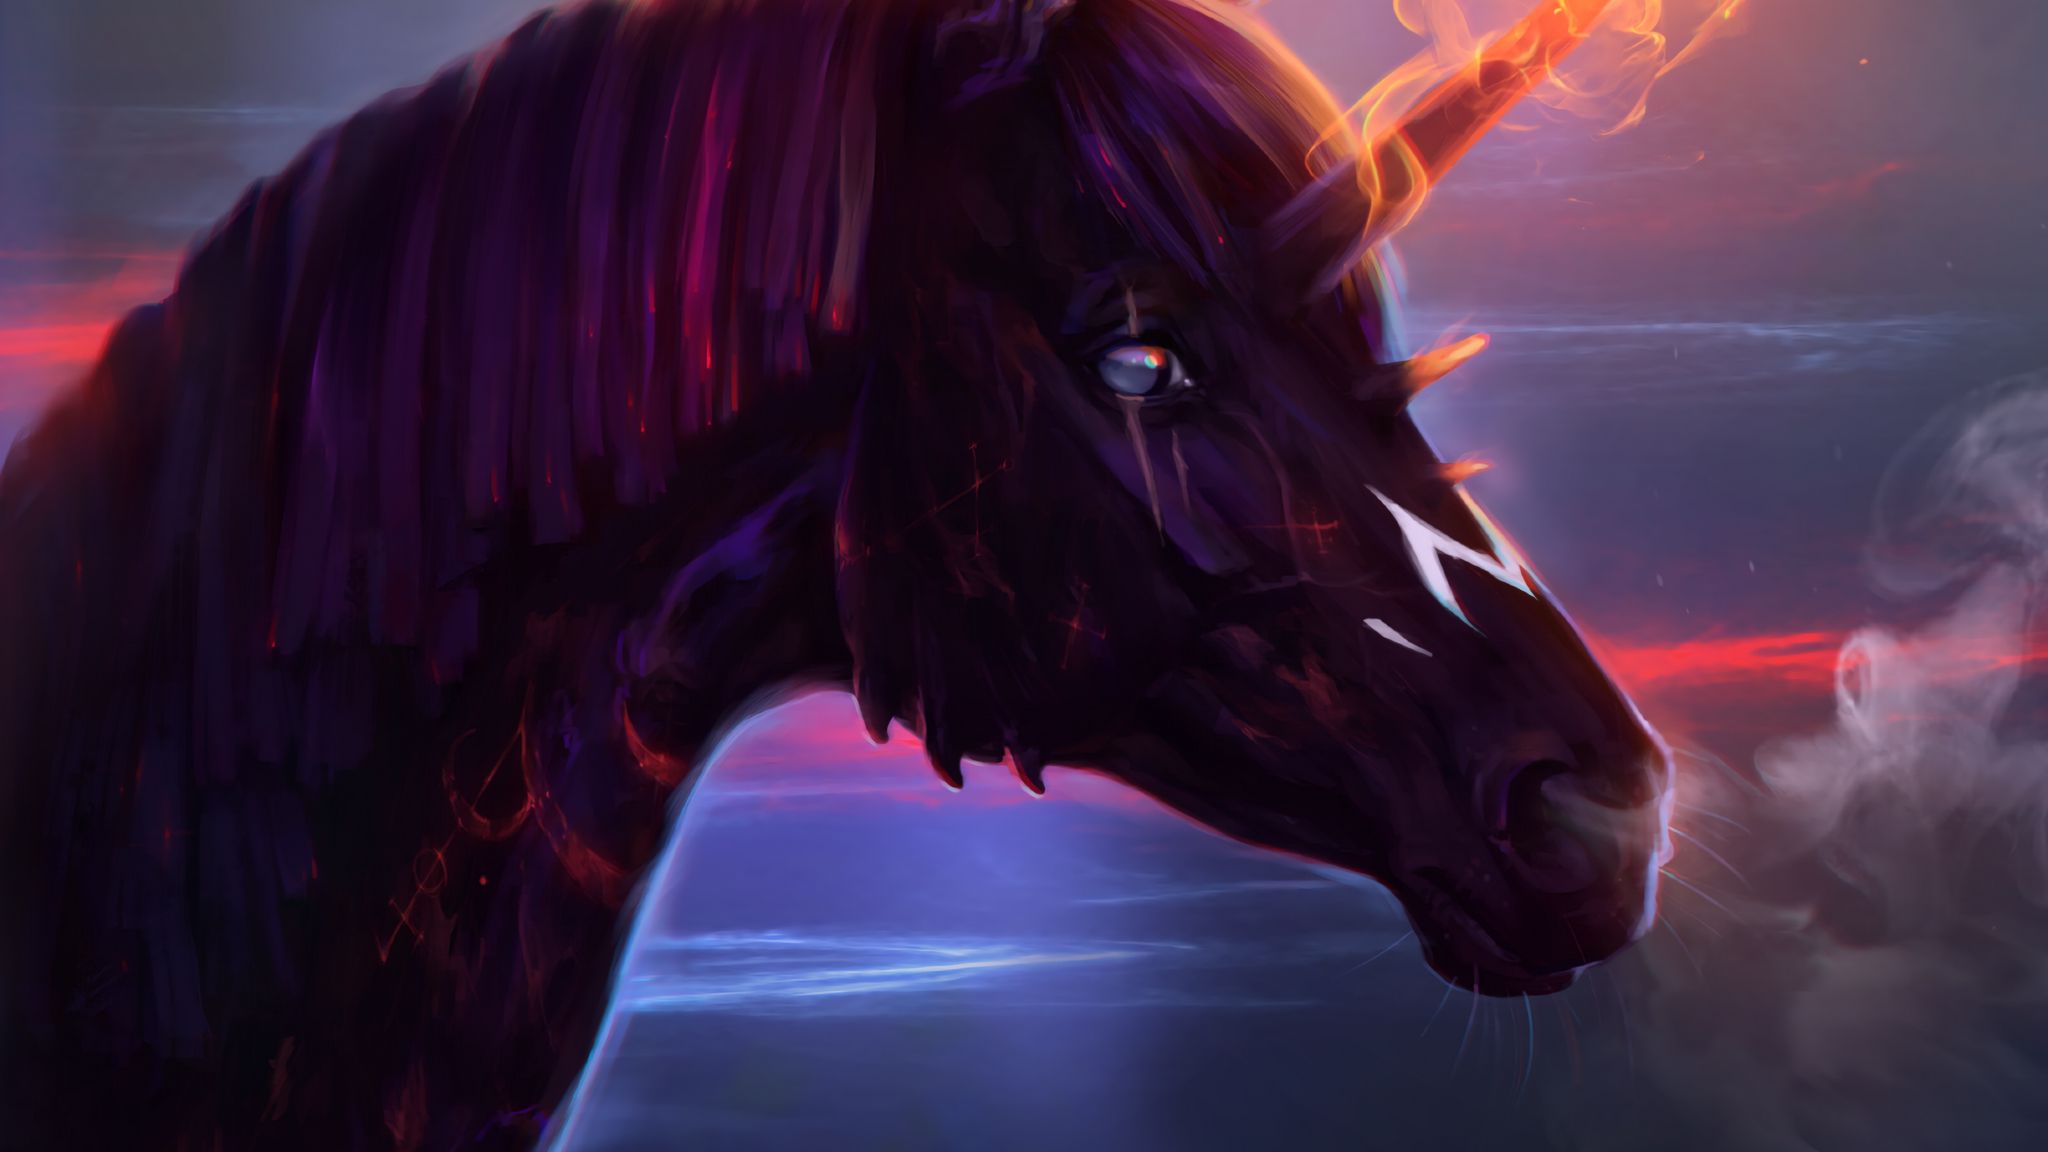 2048x1152 Wallpaper unicorn, horse, art, fire